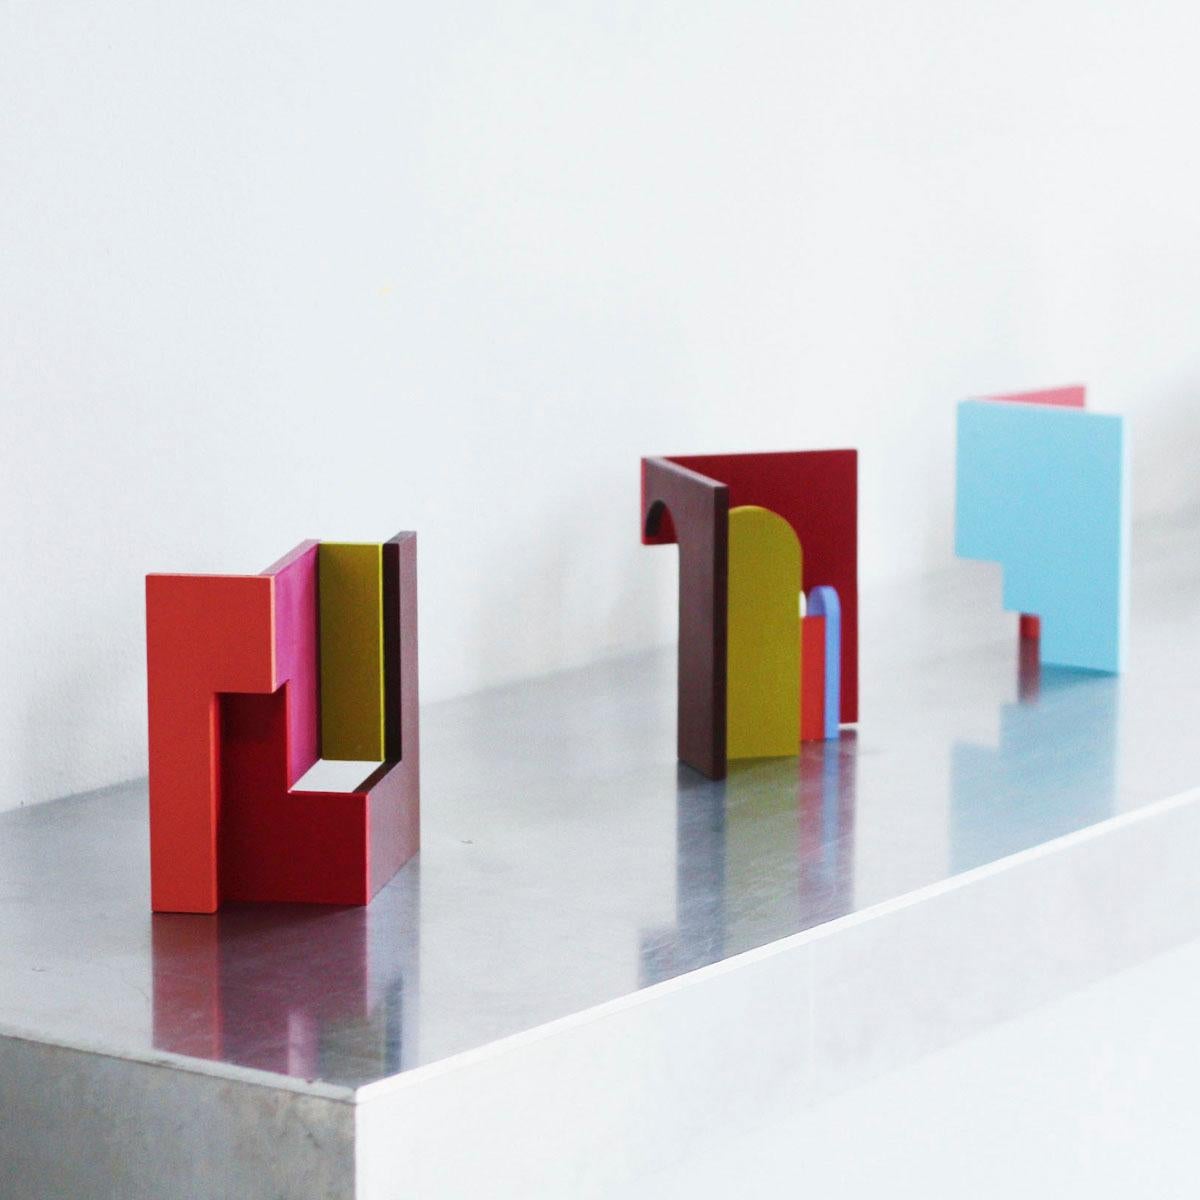 Oía - Abstract, Sculpture, Architecture, Contemporary Art, Marina Esmeraldo 7